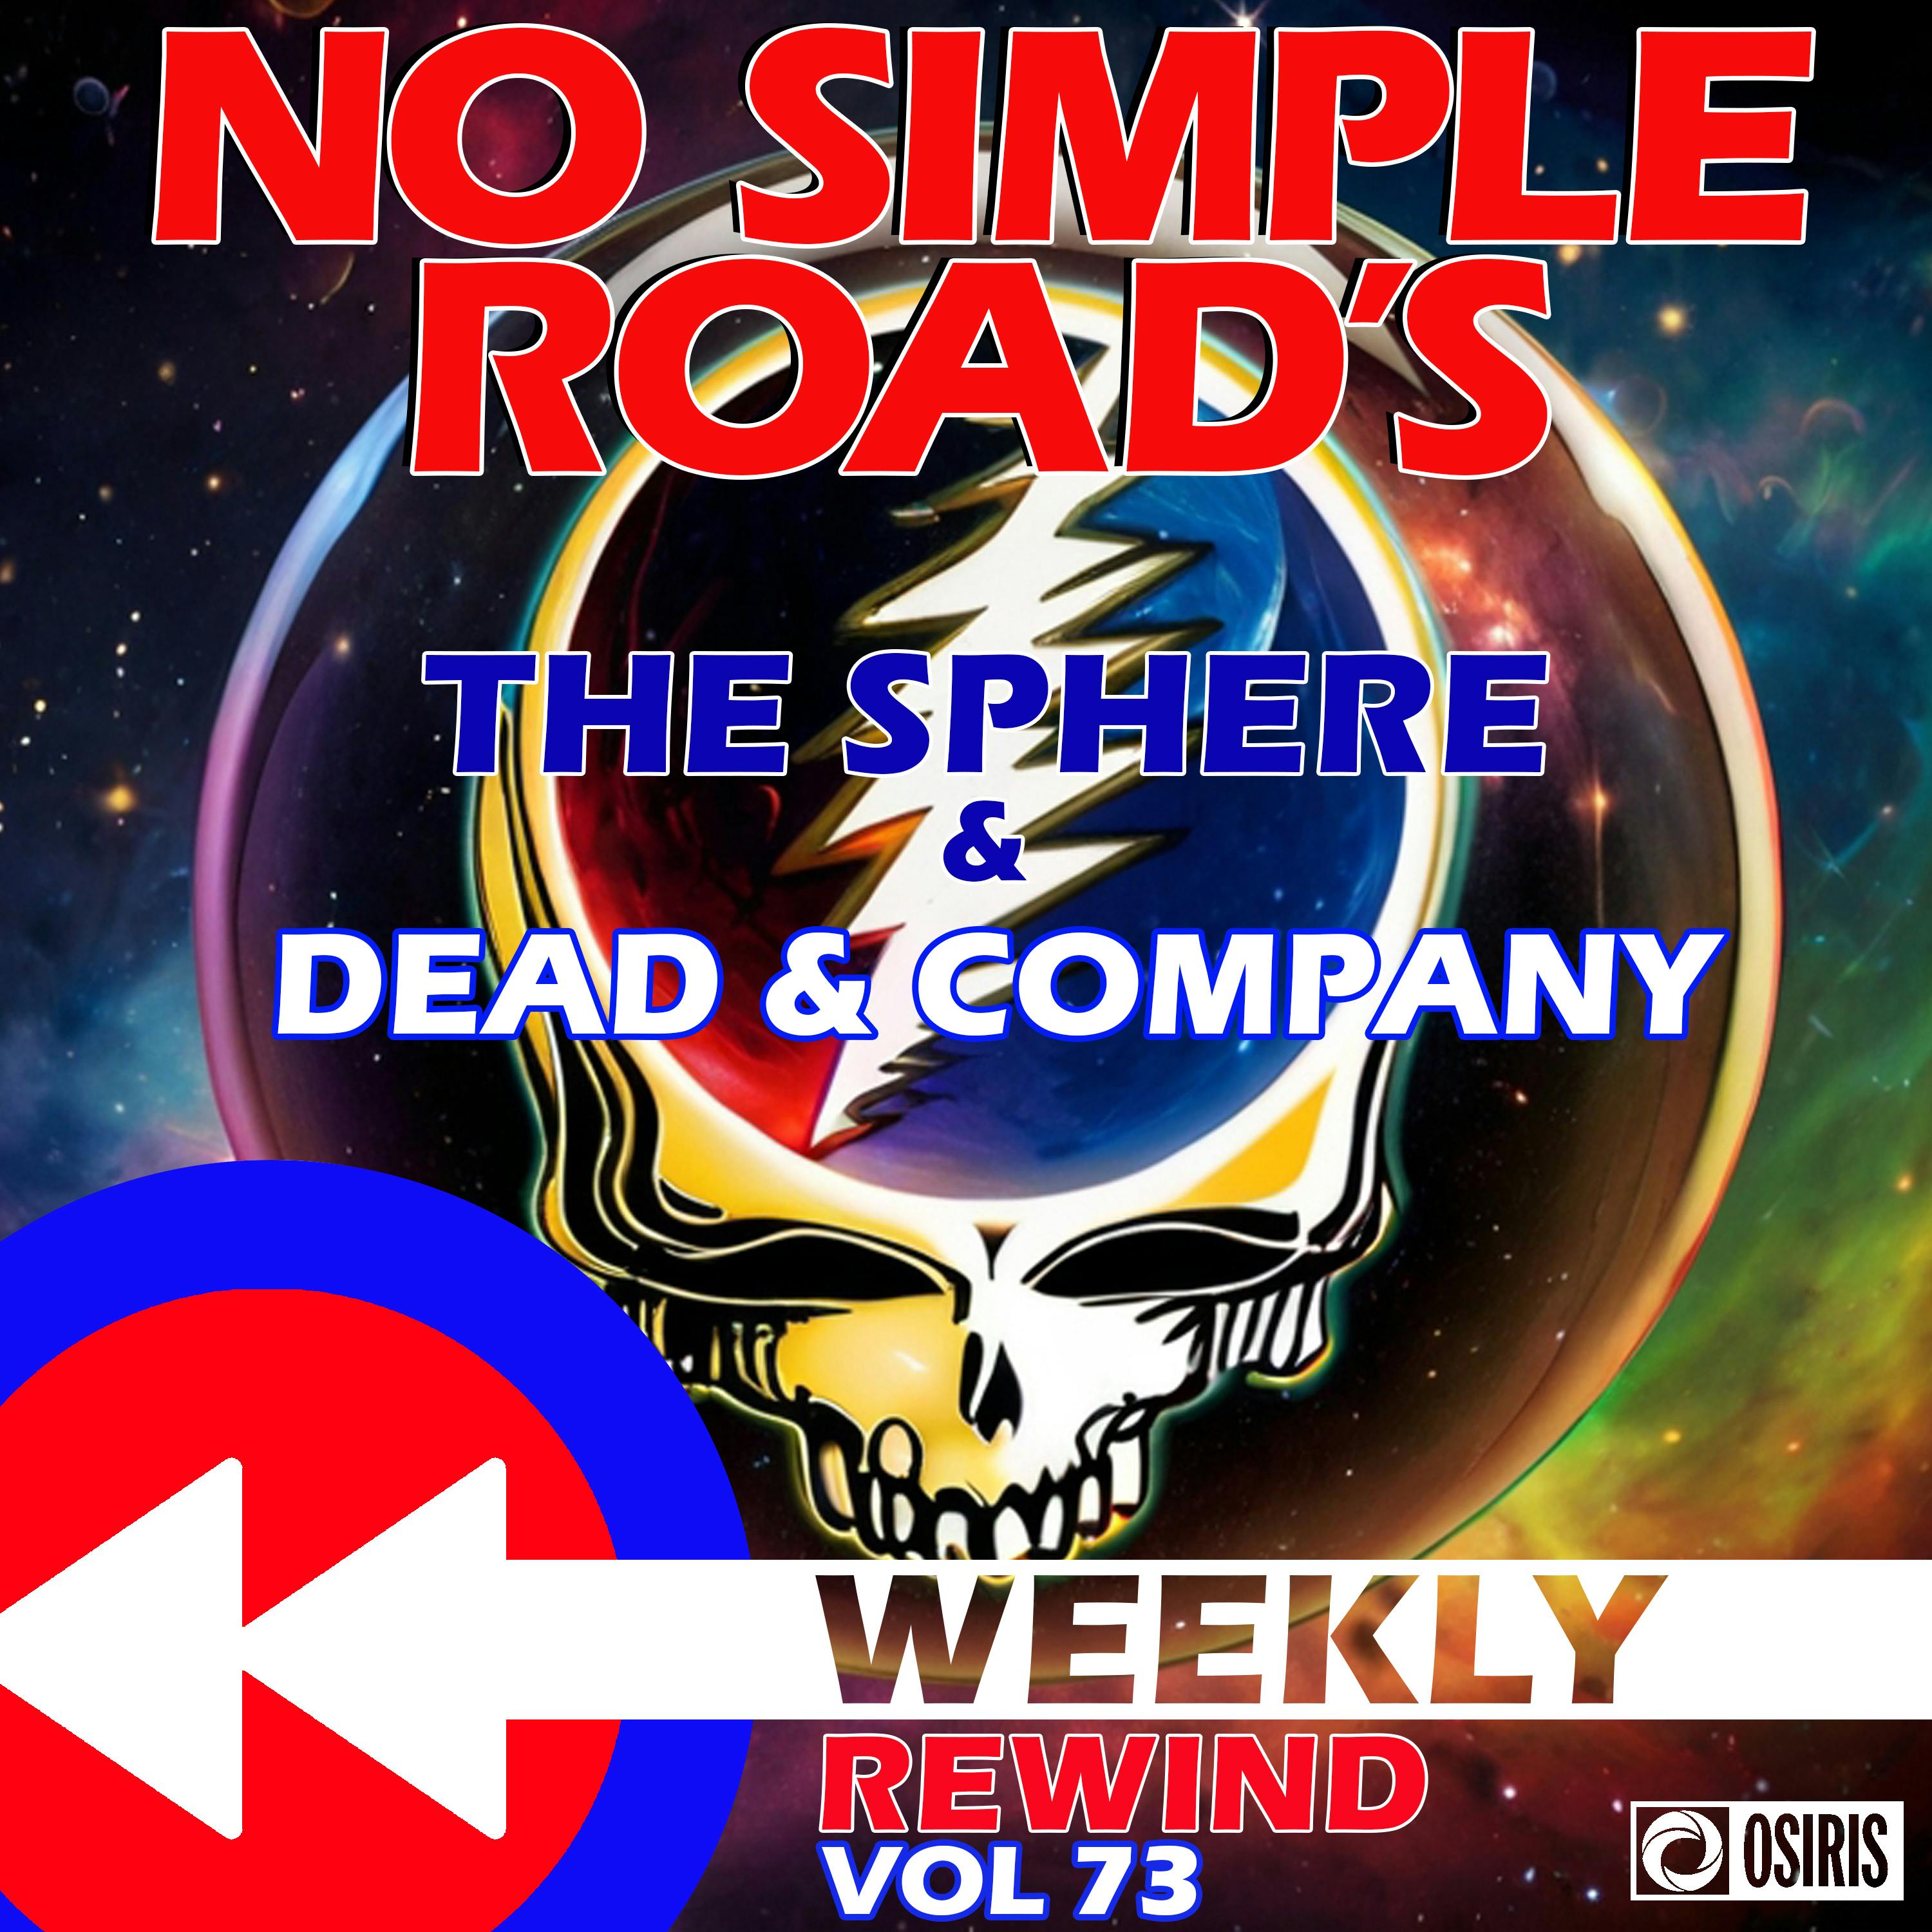 Let's Go Dead & Co: No Simple Road's Weekly Rewind Vol. 73